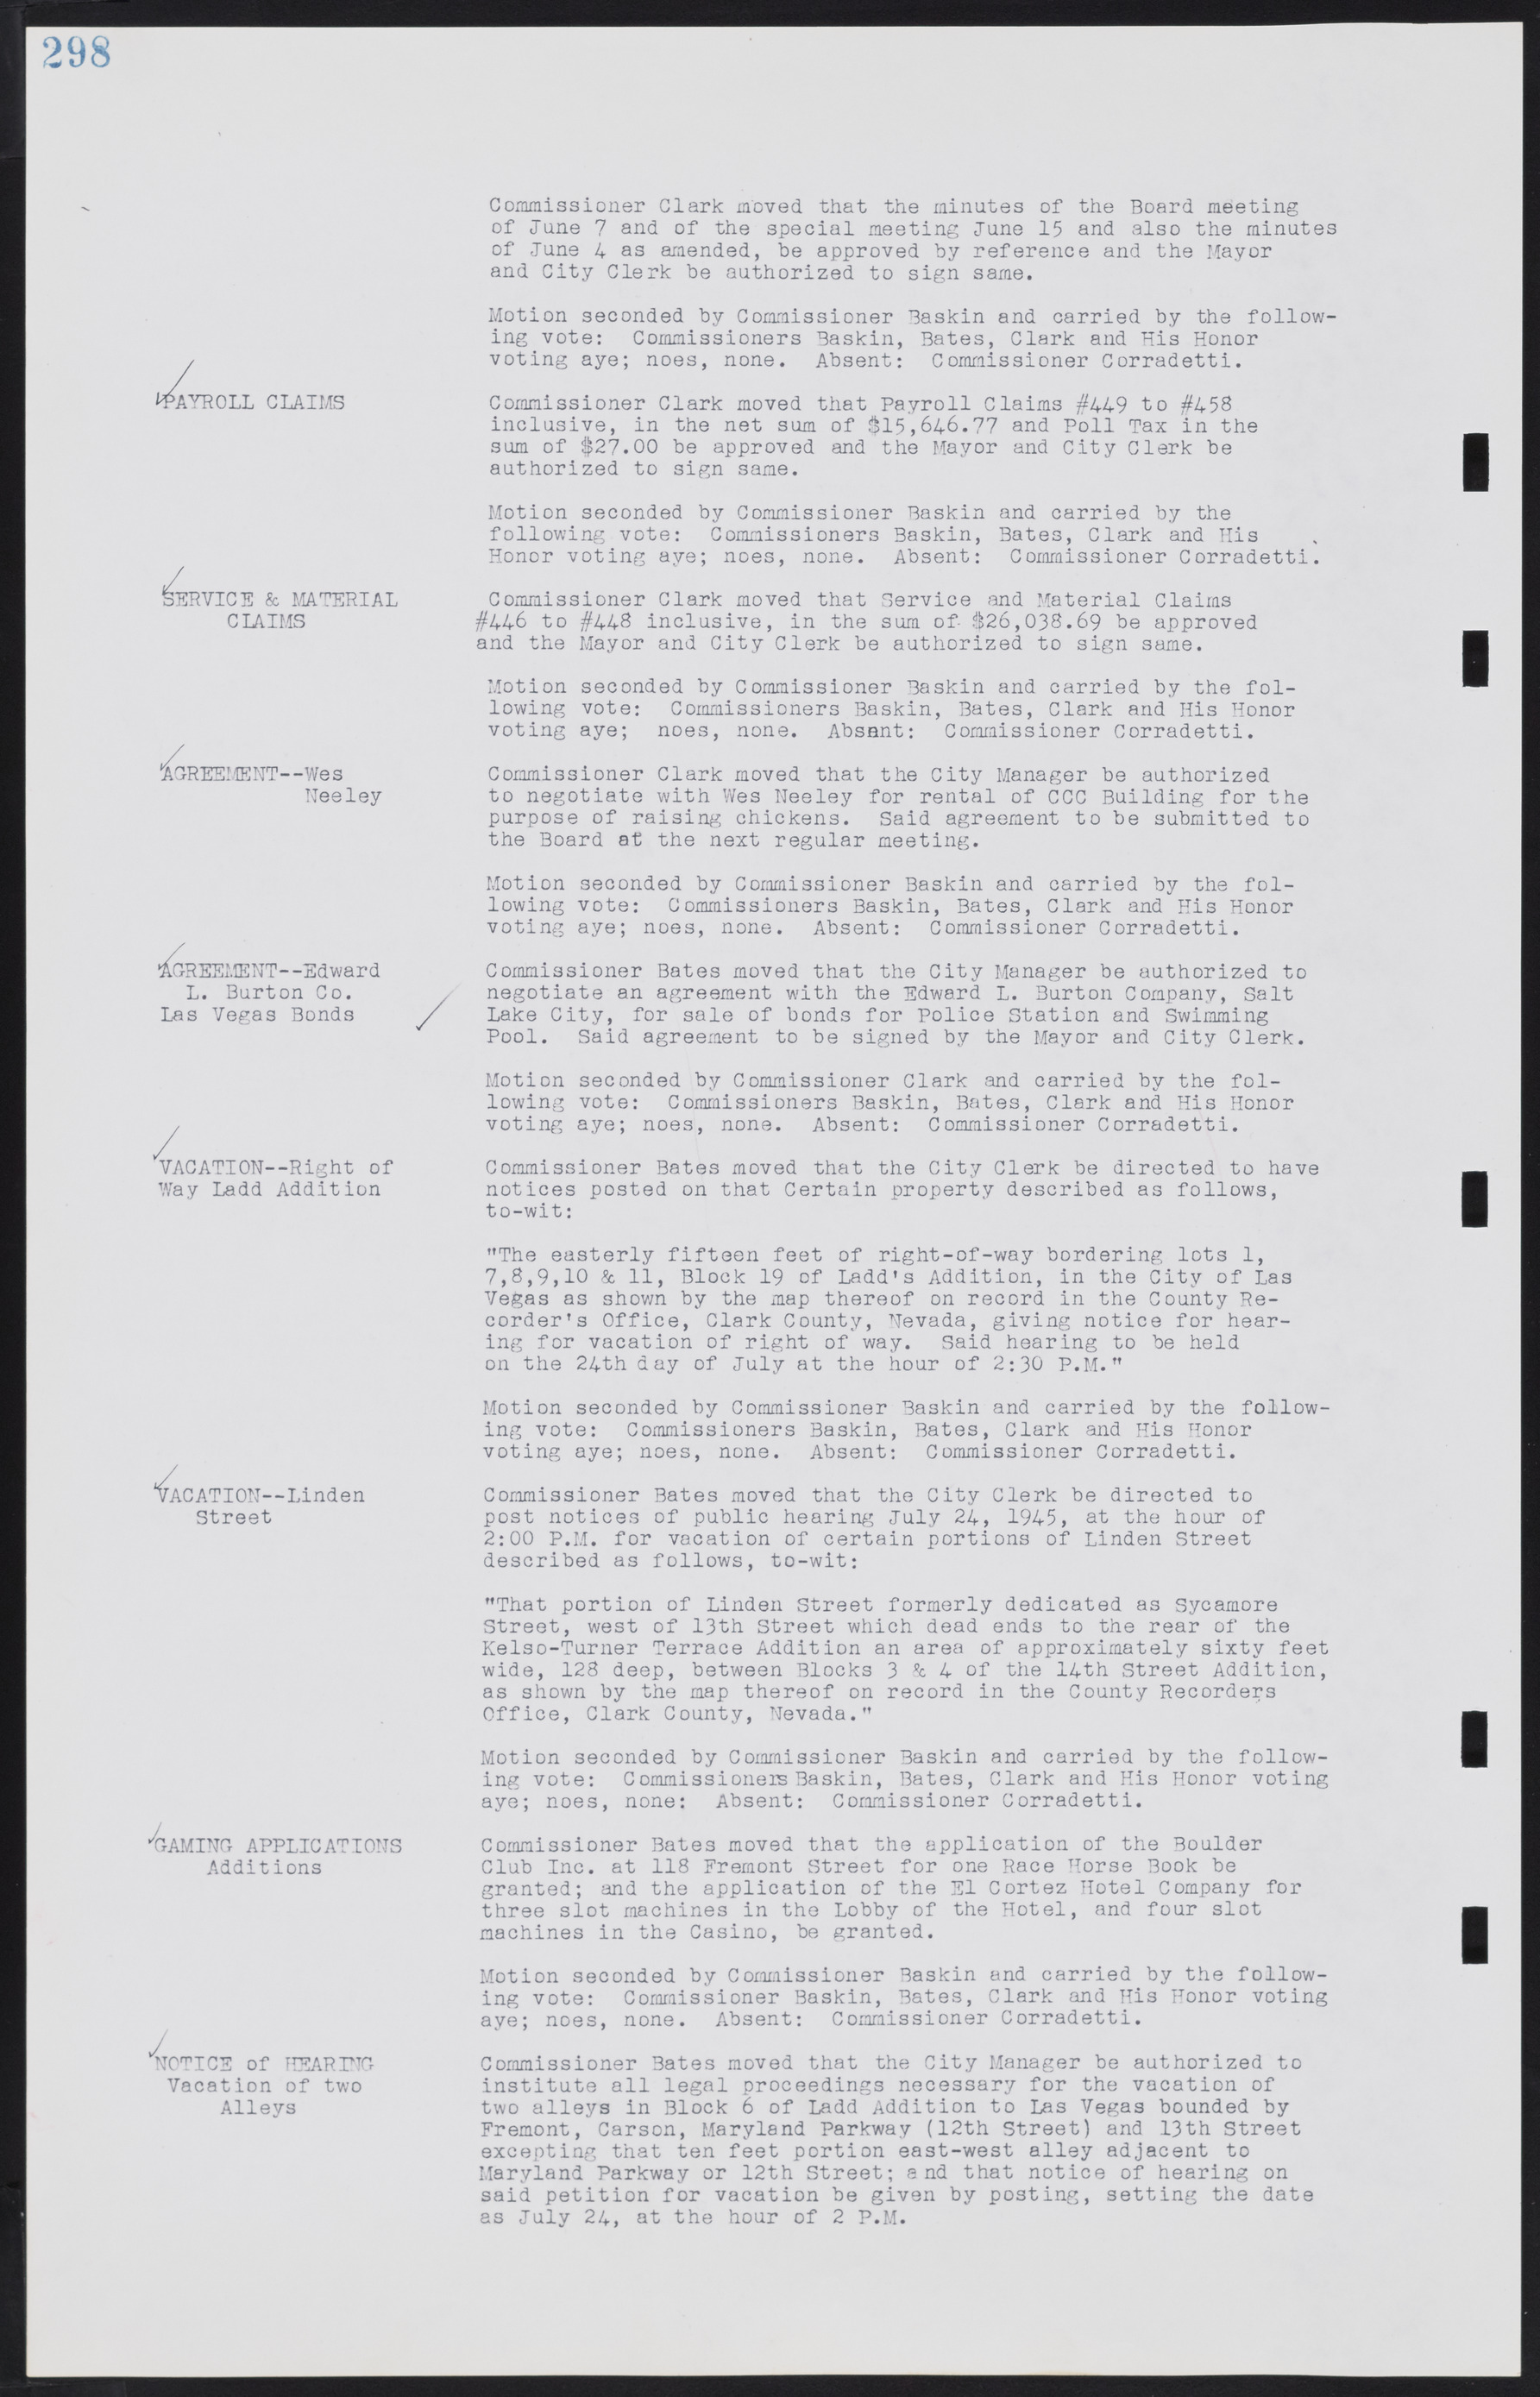 Las Vegas City Commission Minutes, August 11, 1942 to December 30, 1946, lvc000005-320